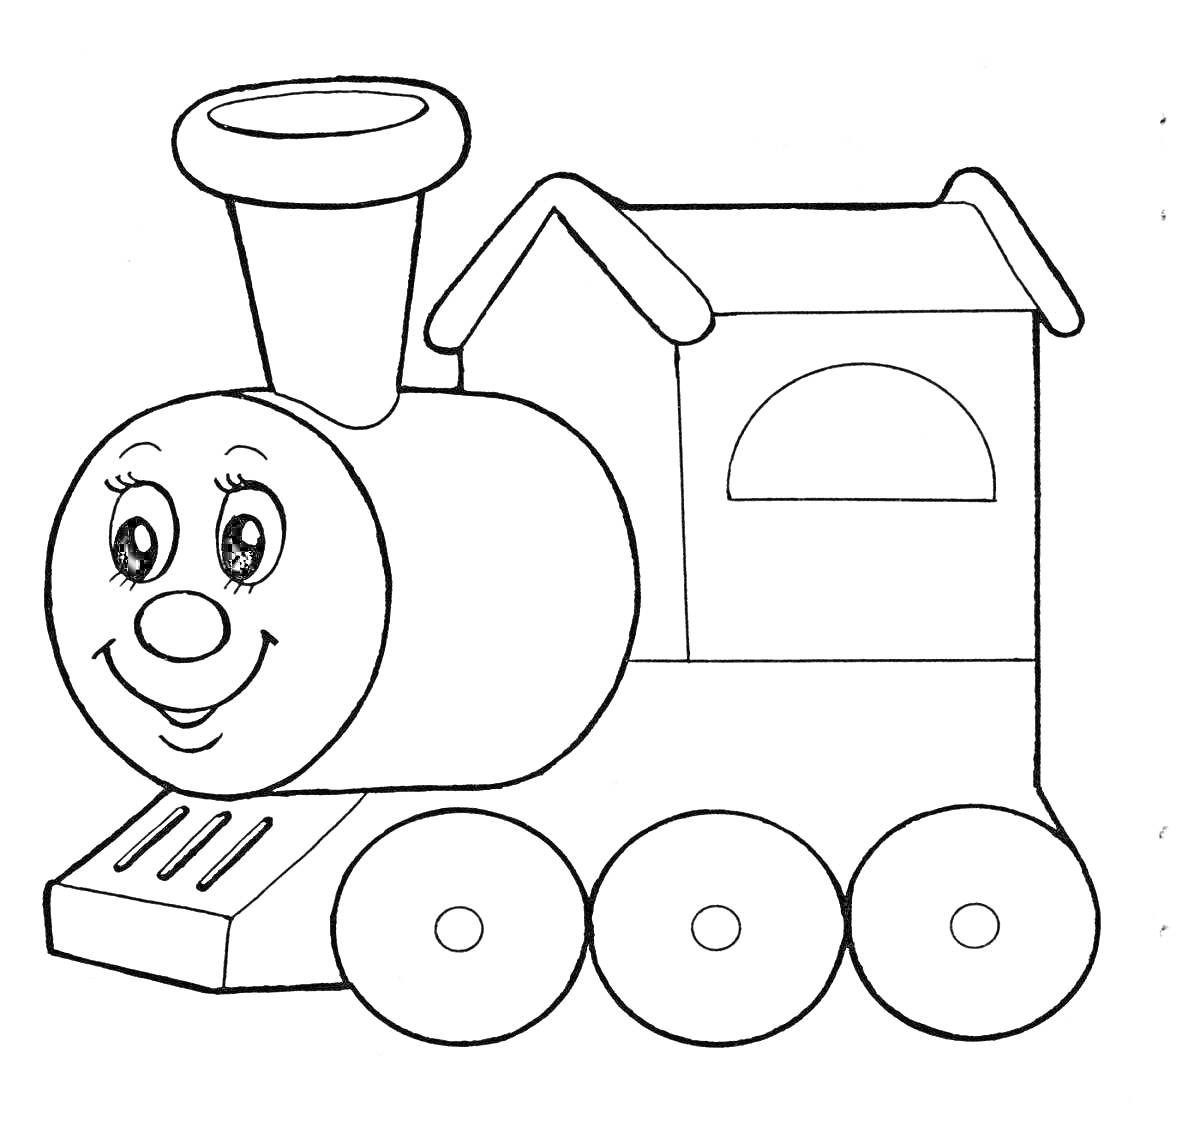 Раскраска Улыбающийся паровозик с трубой, вагоном и окном